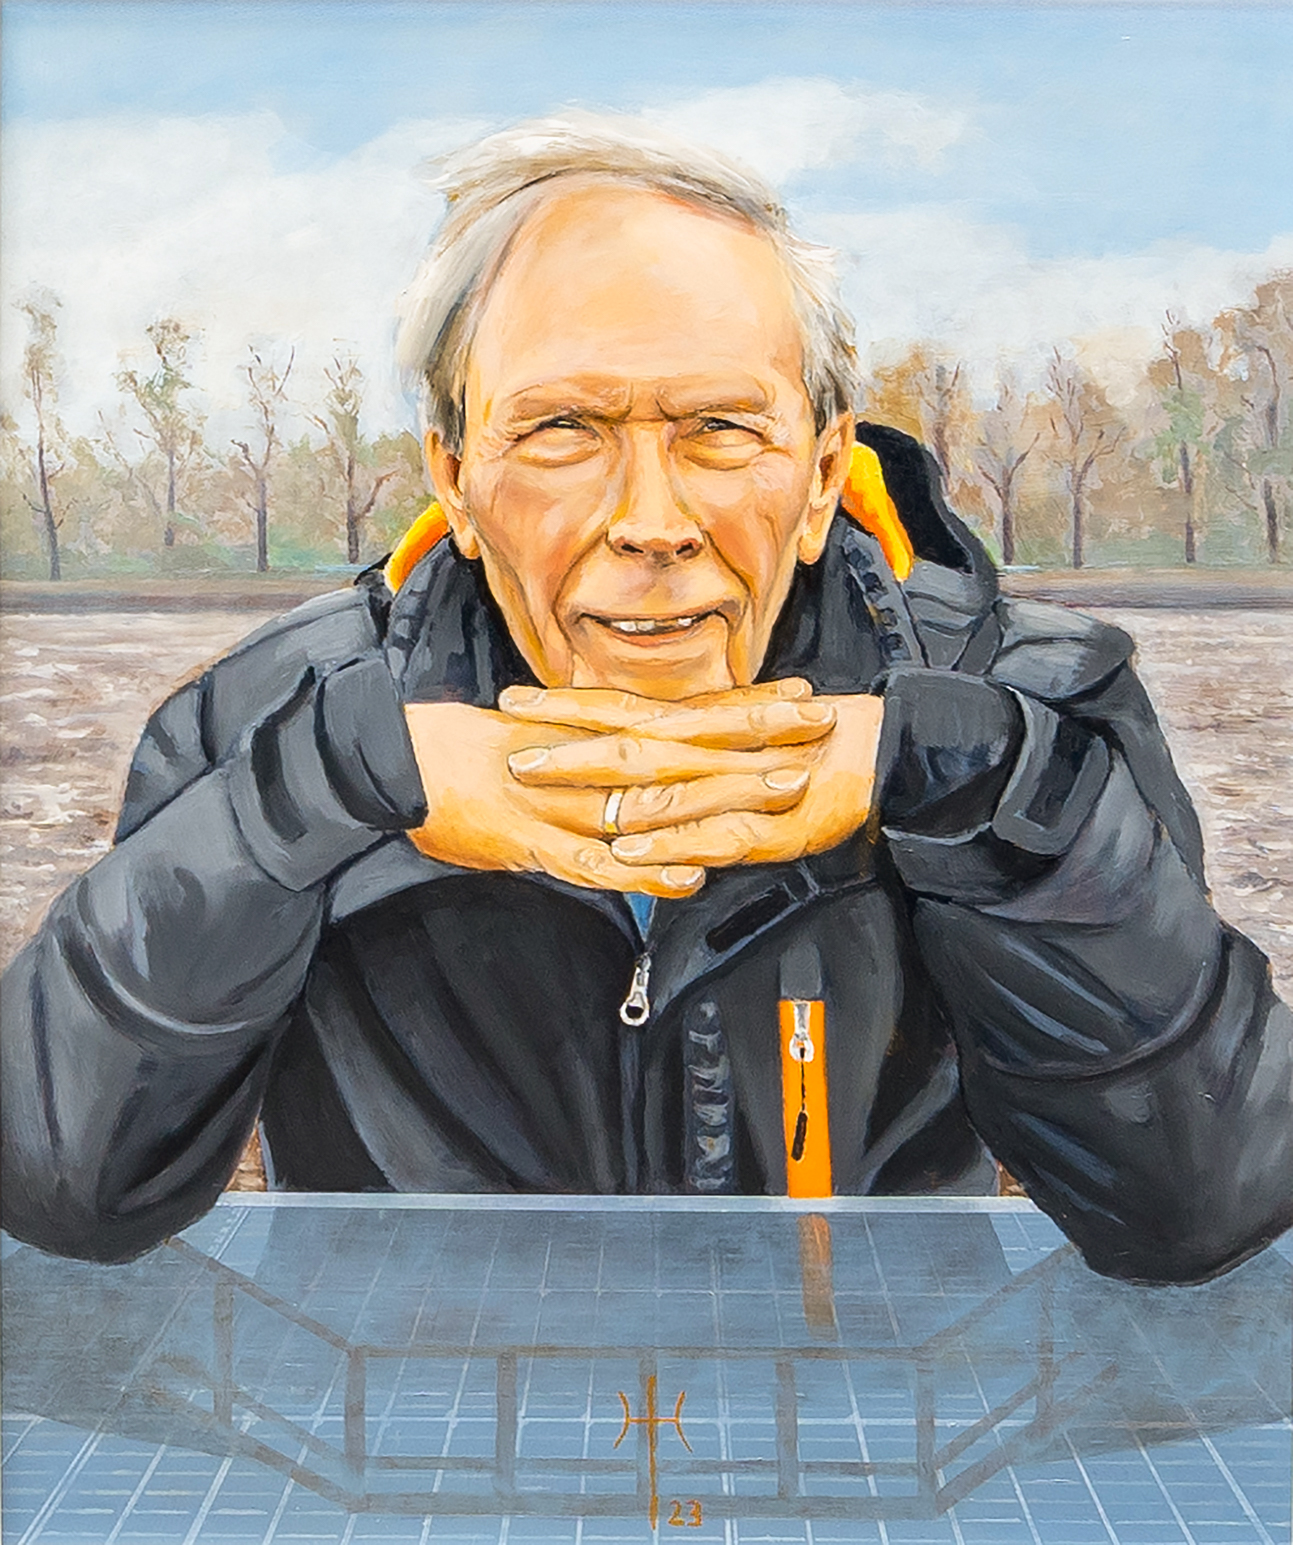 Peter Mendelts door Klaas Koops. Olieverf op doek, 60 x 50